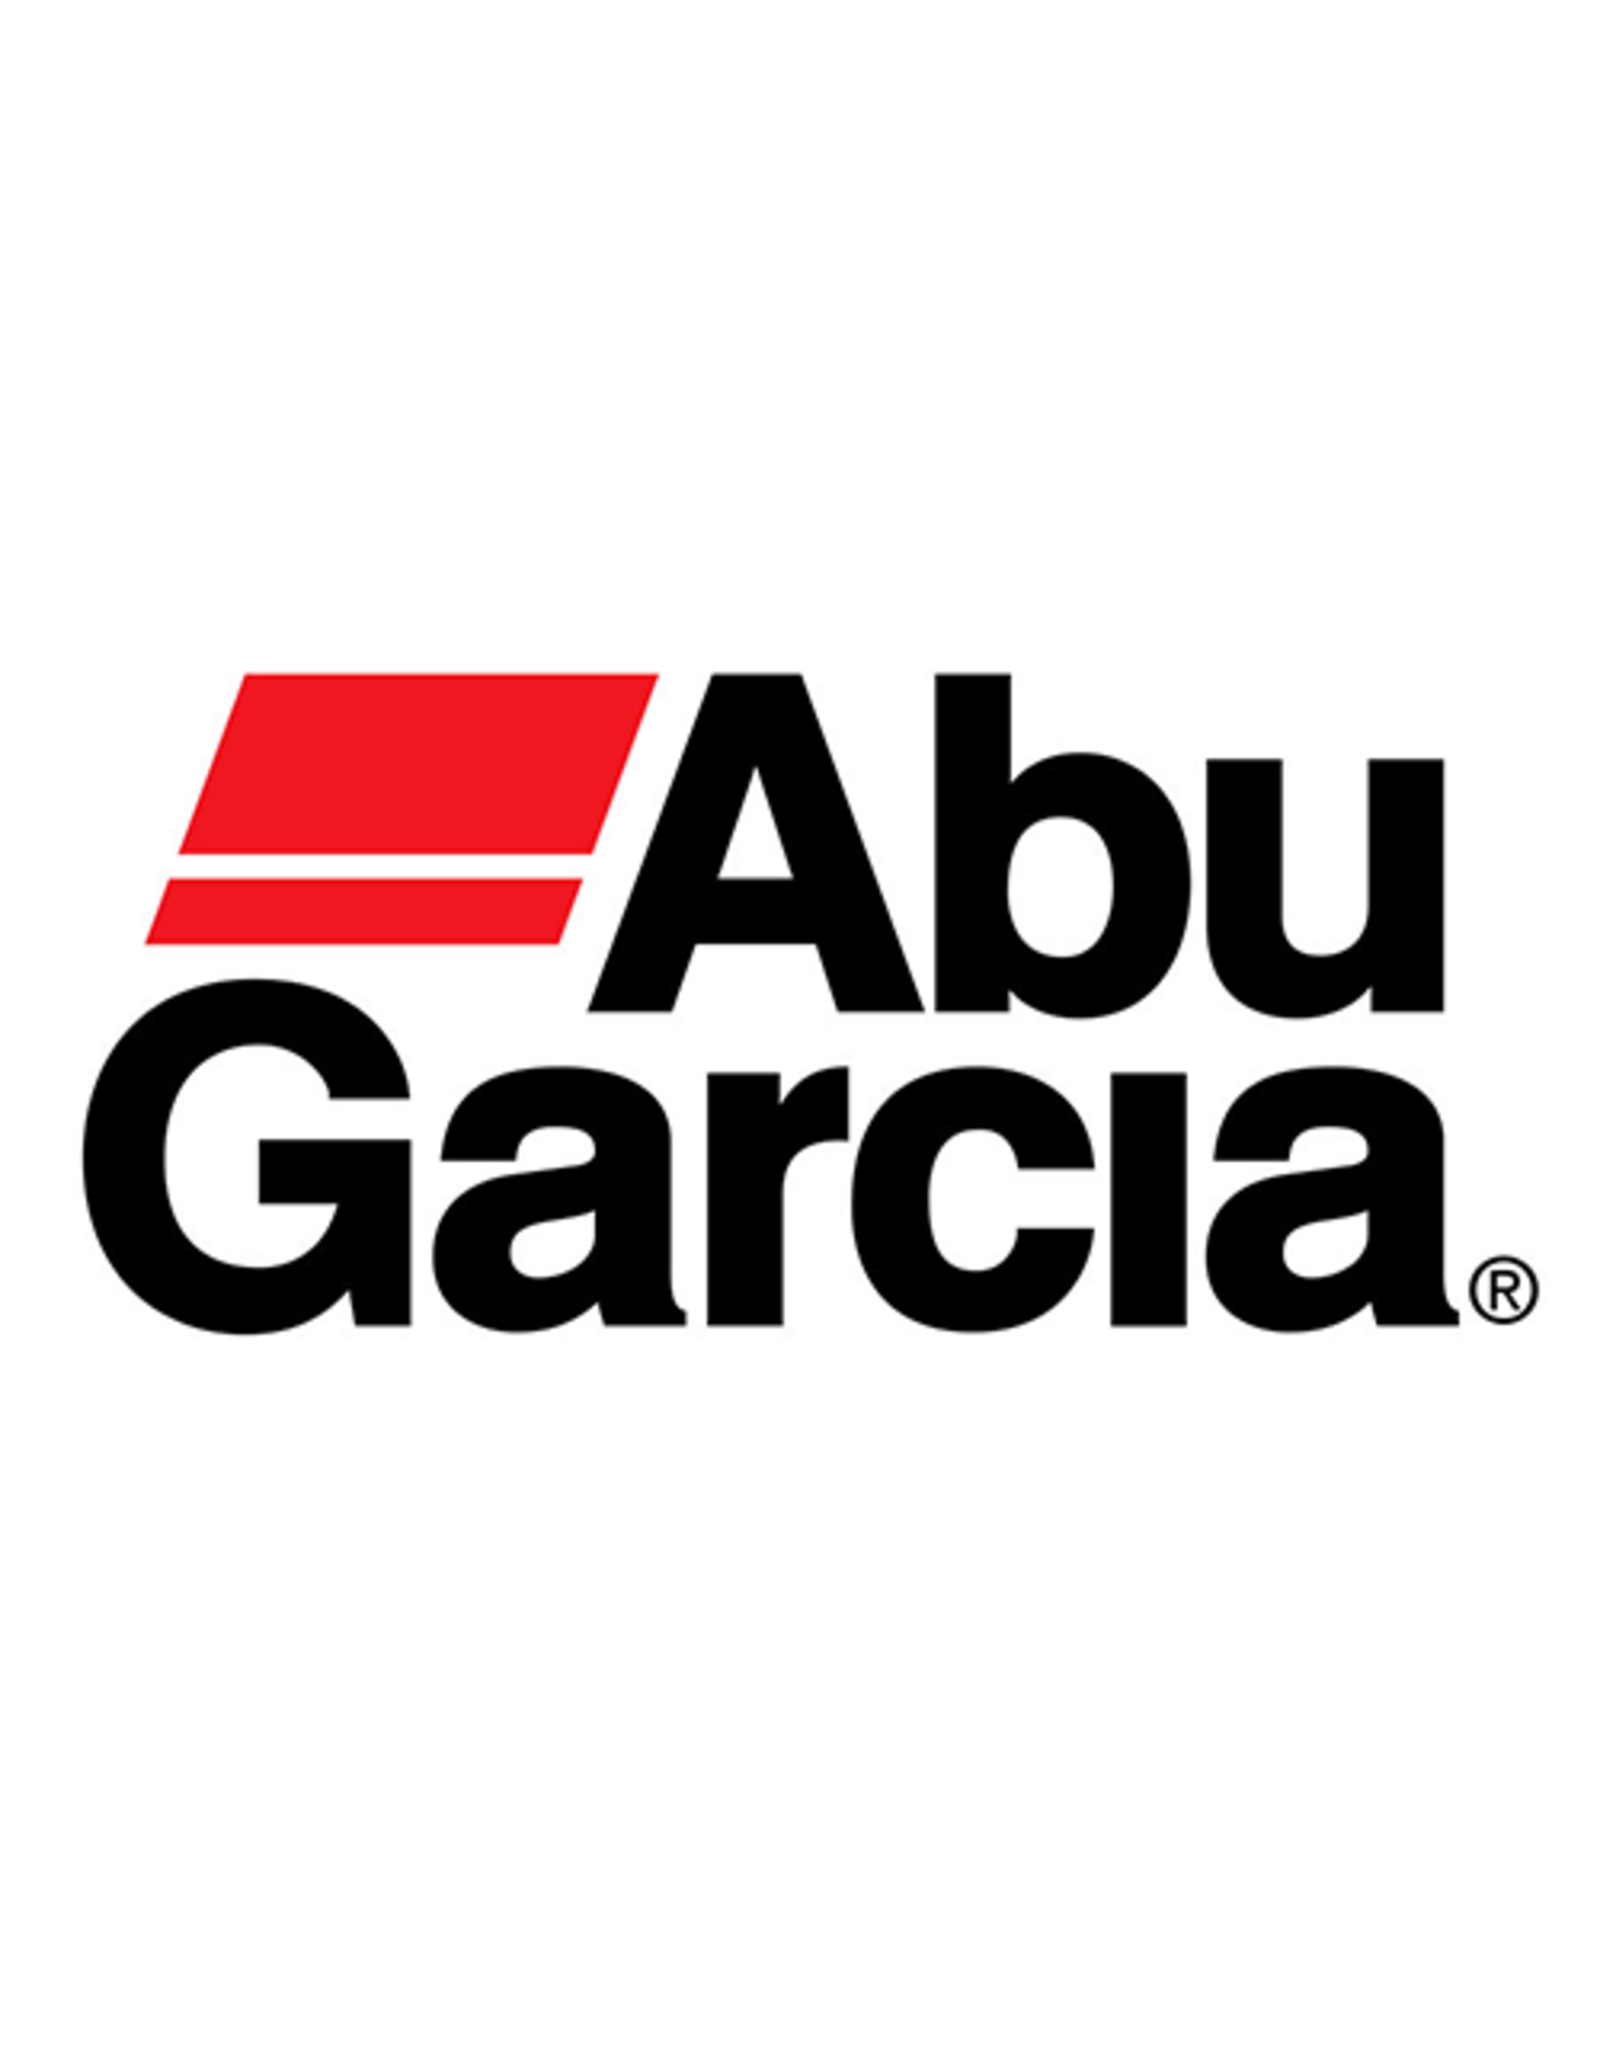 Abu Garcia 33751  A/R SPRING/ NLA